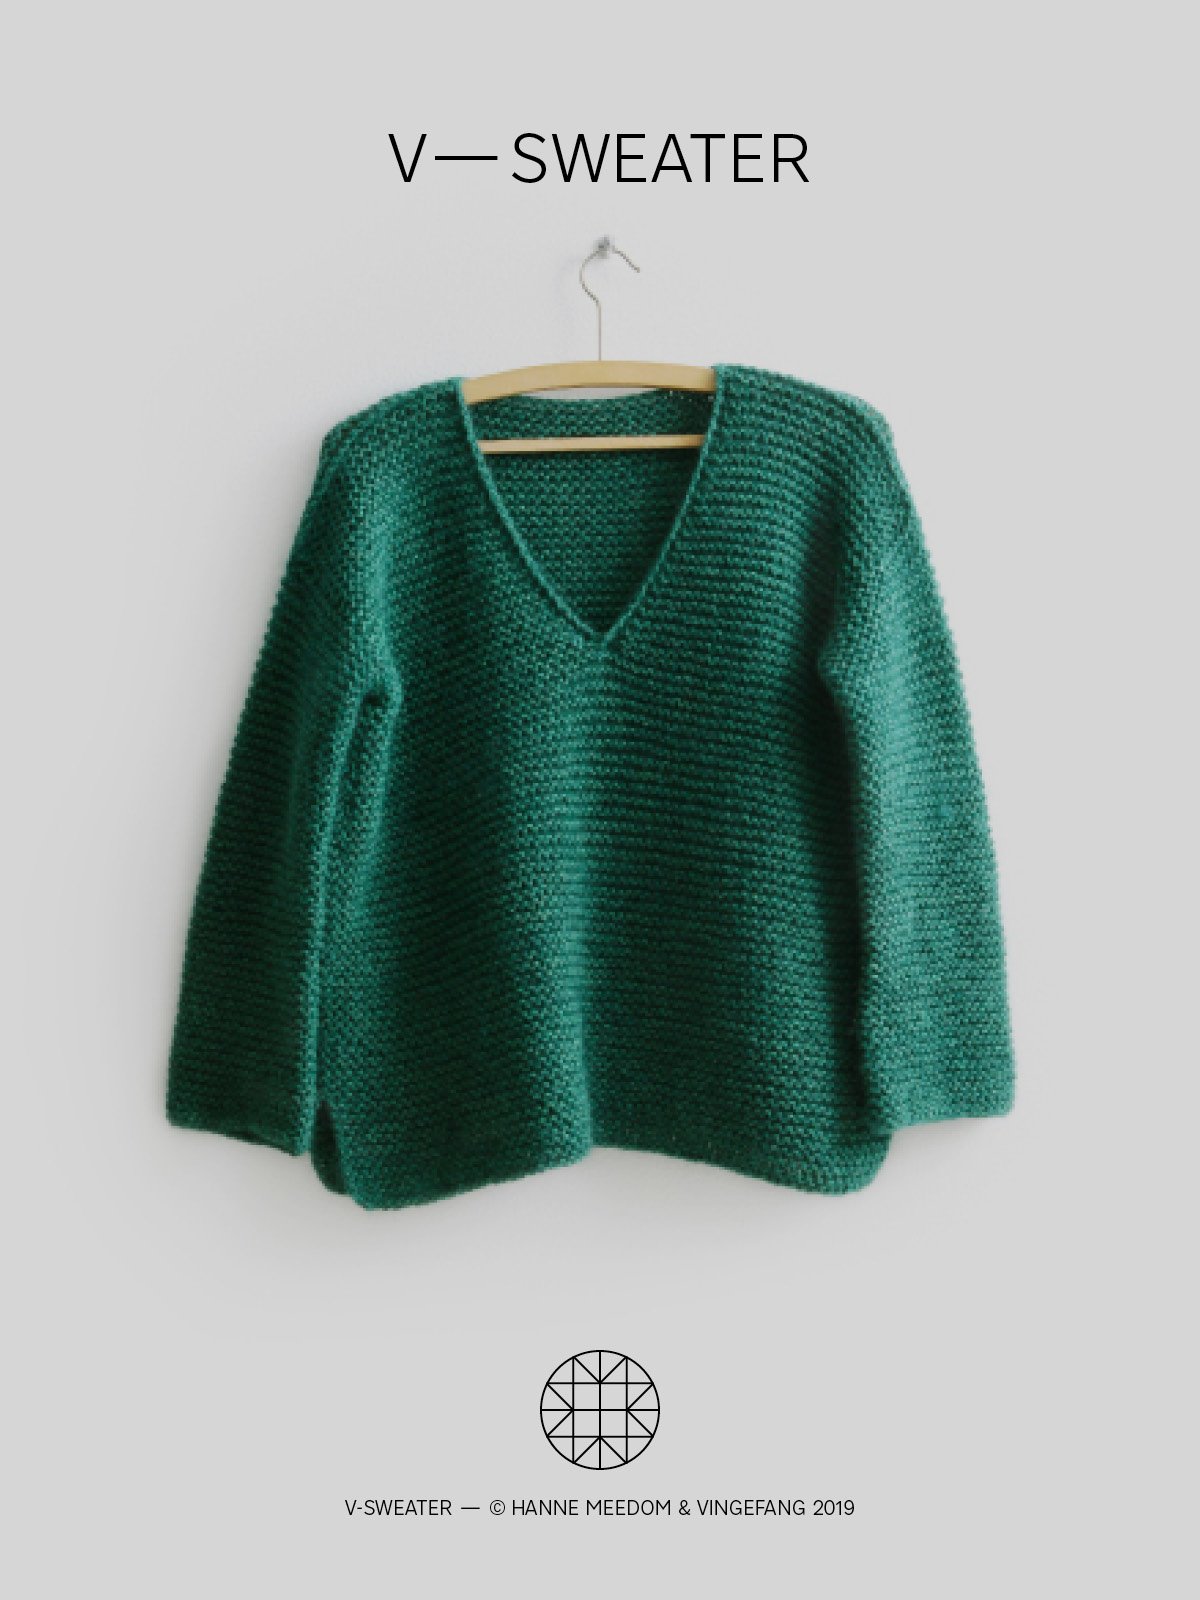 Opskrift / v—sweater